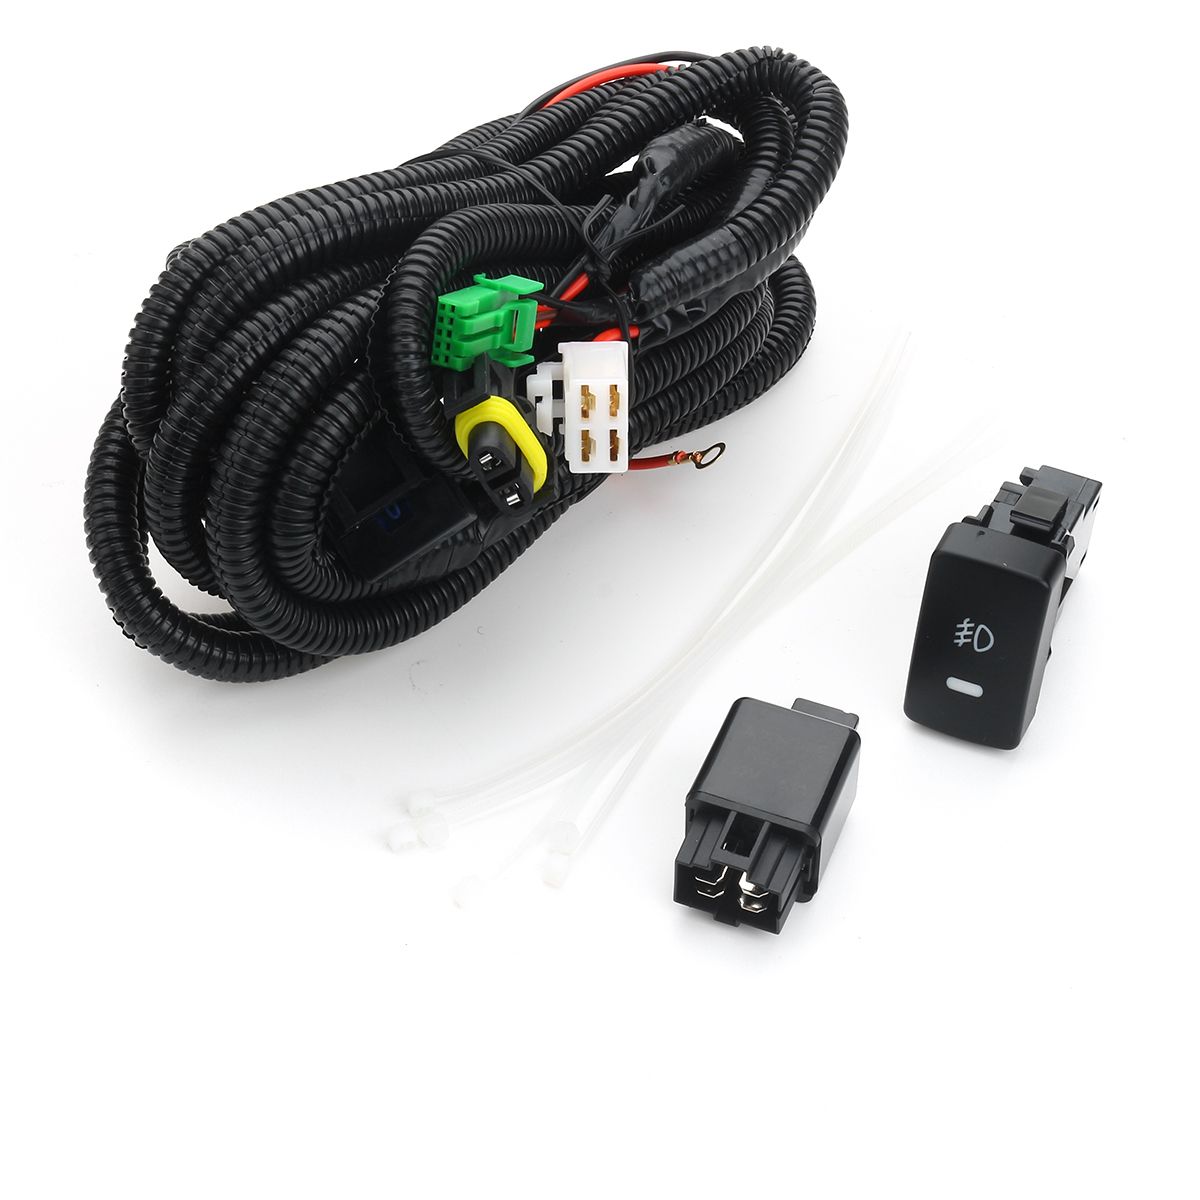 Pair-Car-Fog-Lights-LR-Grill-Lamp-Bulb-Harness-Switch-Kit-For-Honda-CR-V-CRV-15-16-1486020